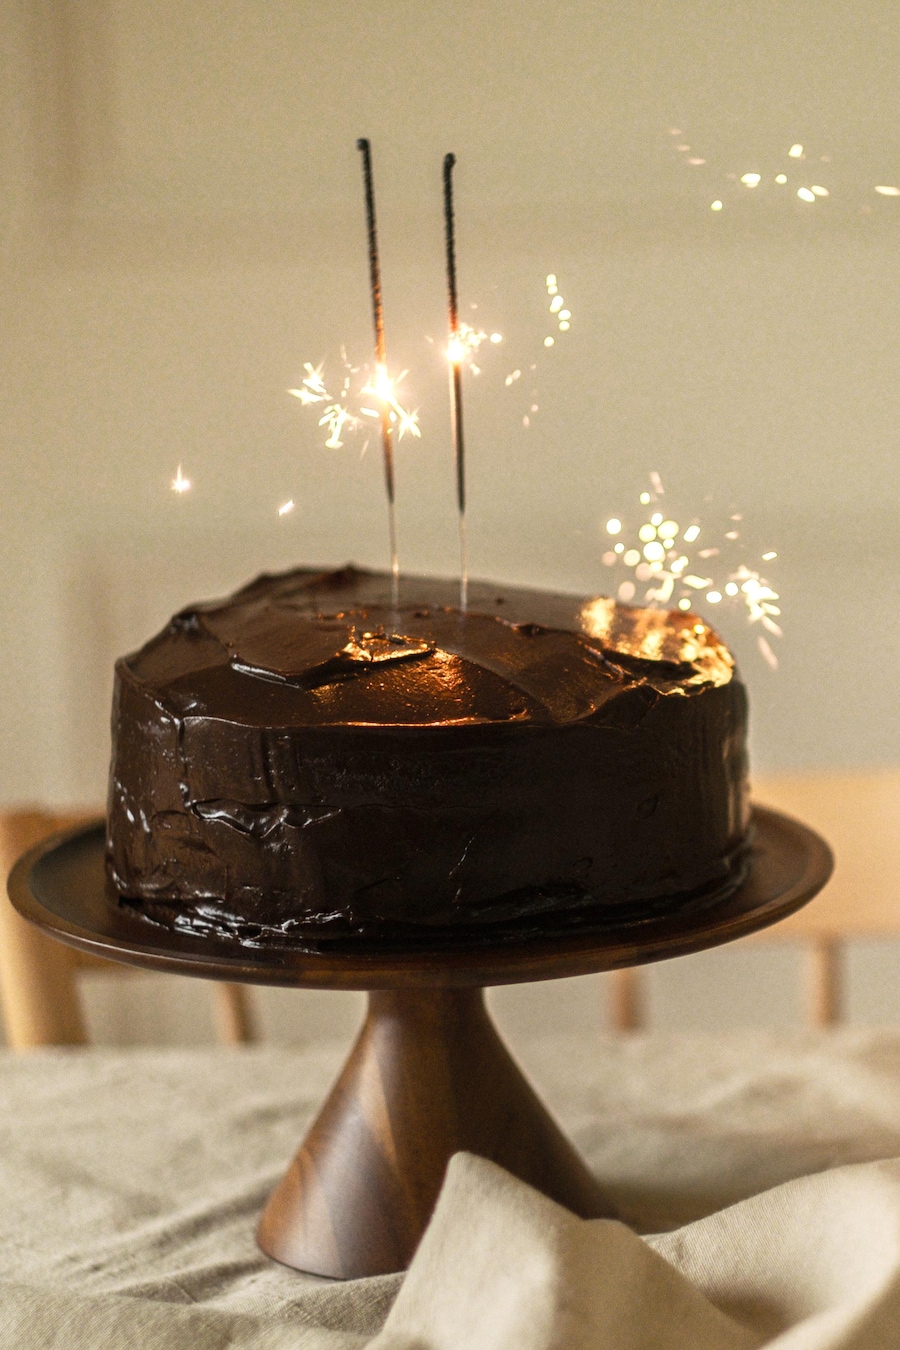 Un gâteau au chocolat sur un porte-gâteau, avec des chandelles allumées.